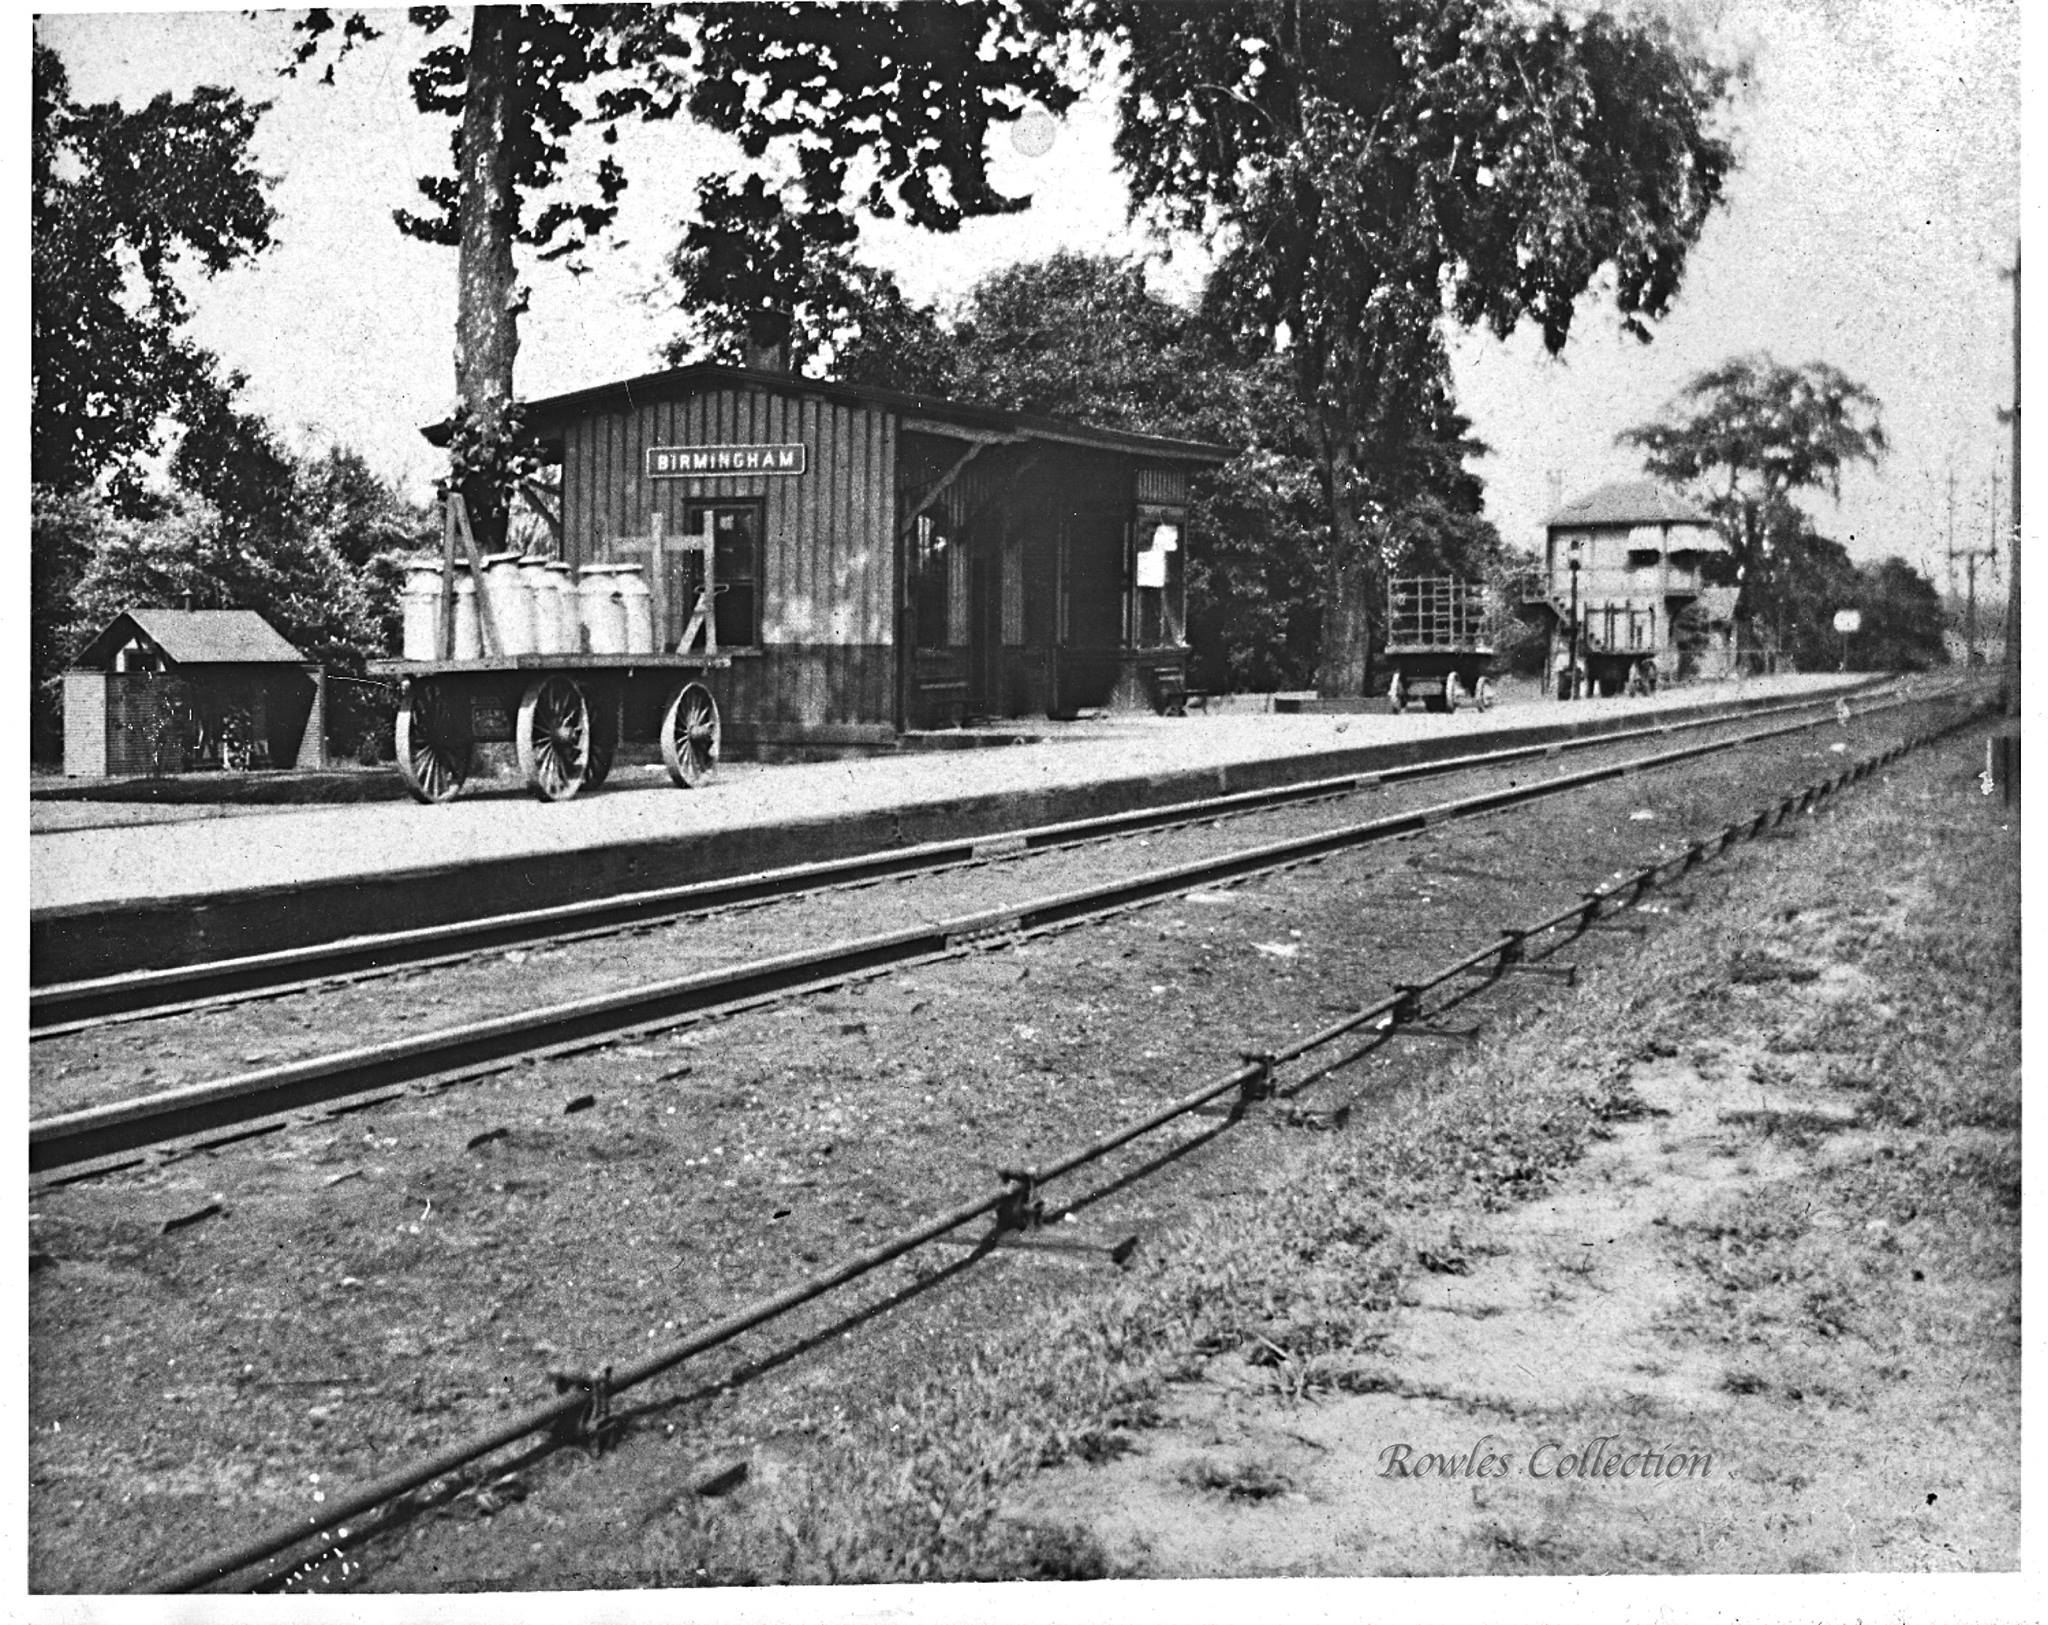 Birmingham - Birmingham RR Station with wagon  - cc 1910 - Alan Rowles